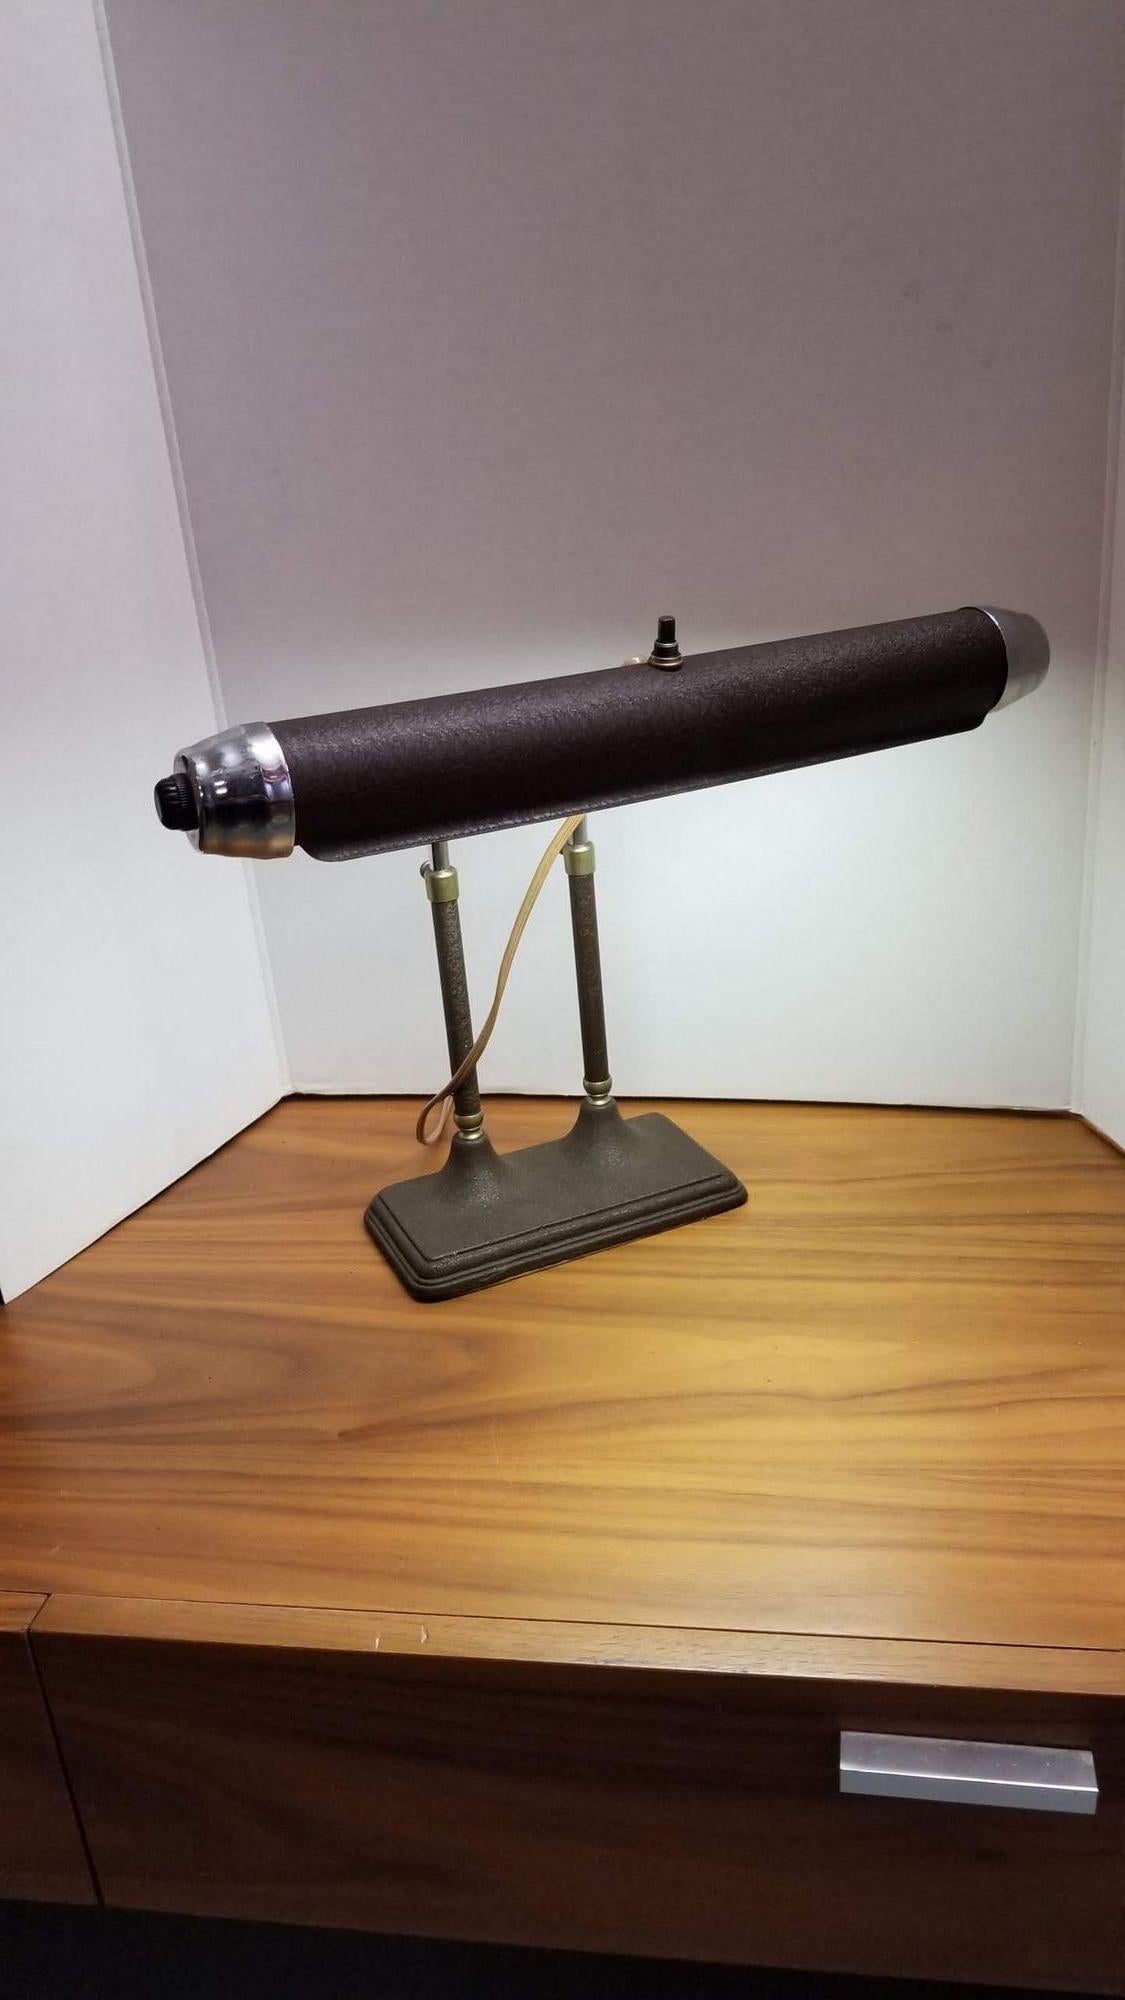 Lampe de bureau fluorescente Art Déco, émaillée brun/gris, au corps profilé et aux extrémités chromées de style 